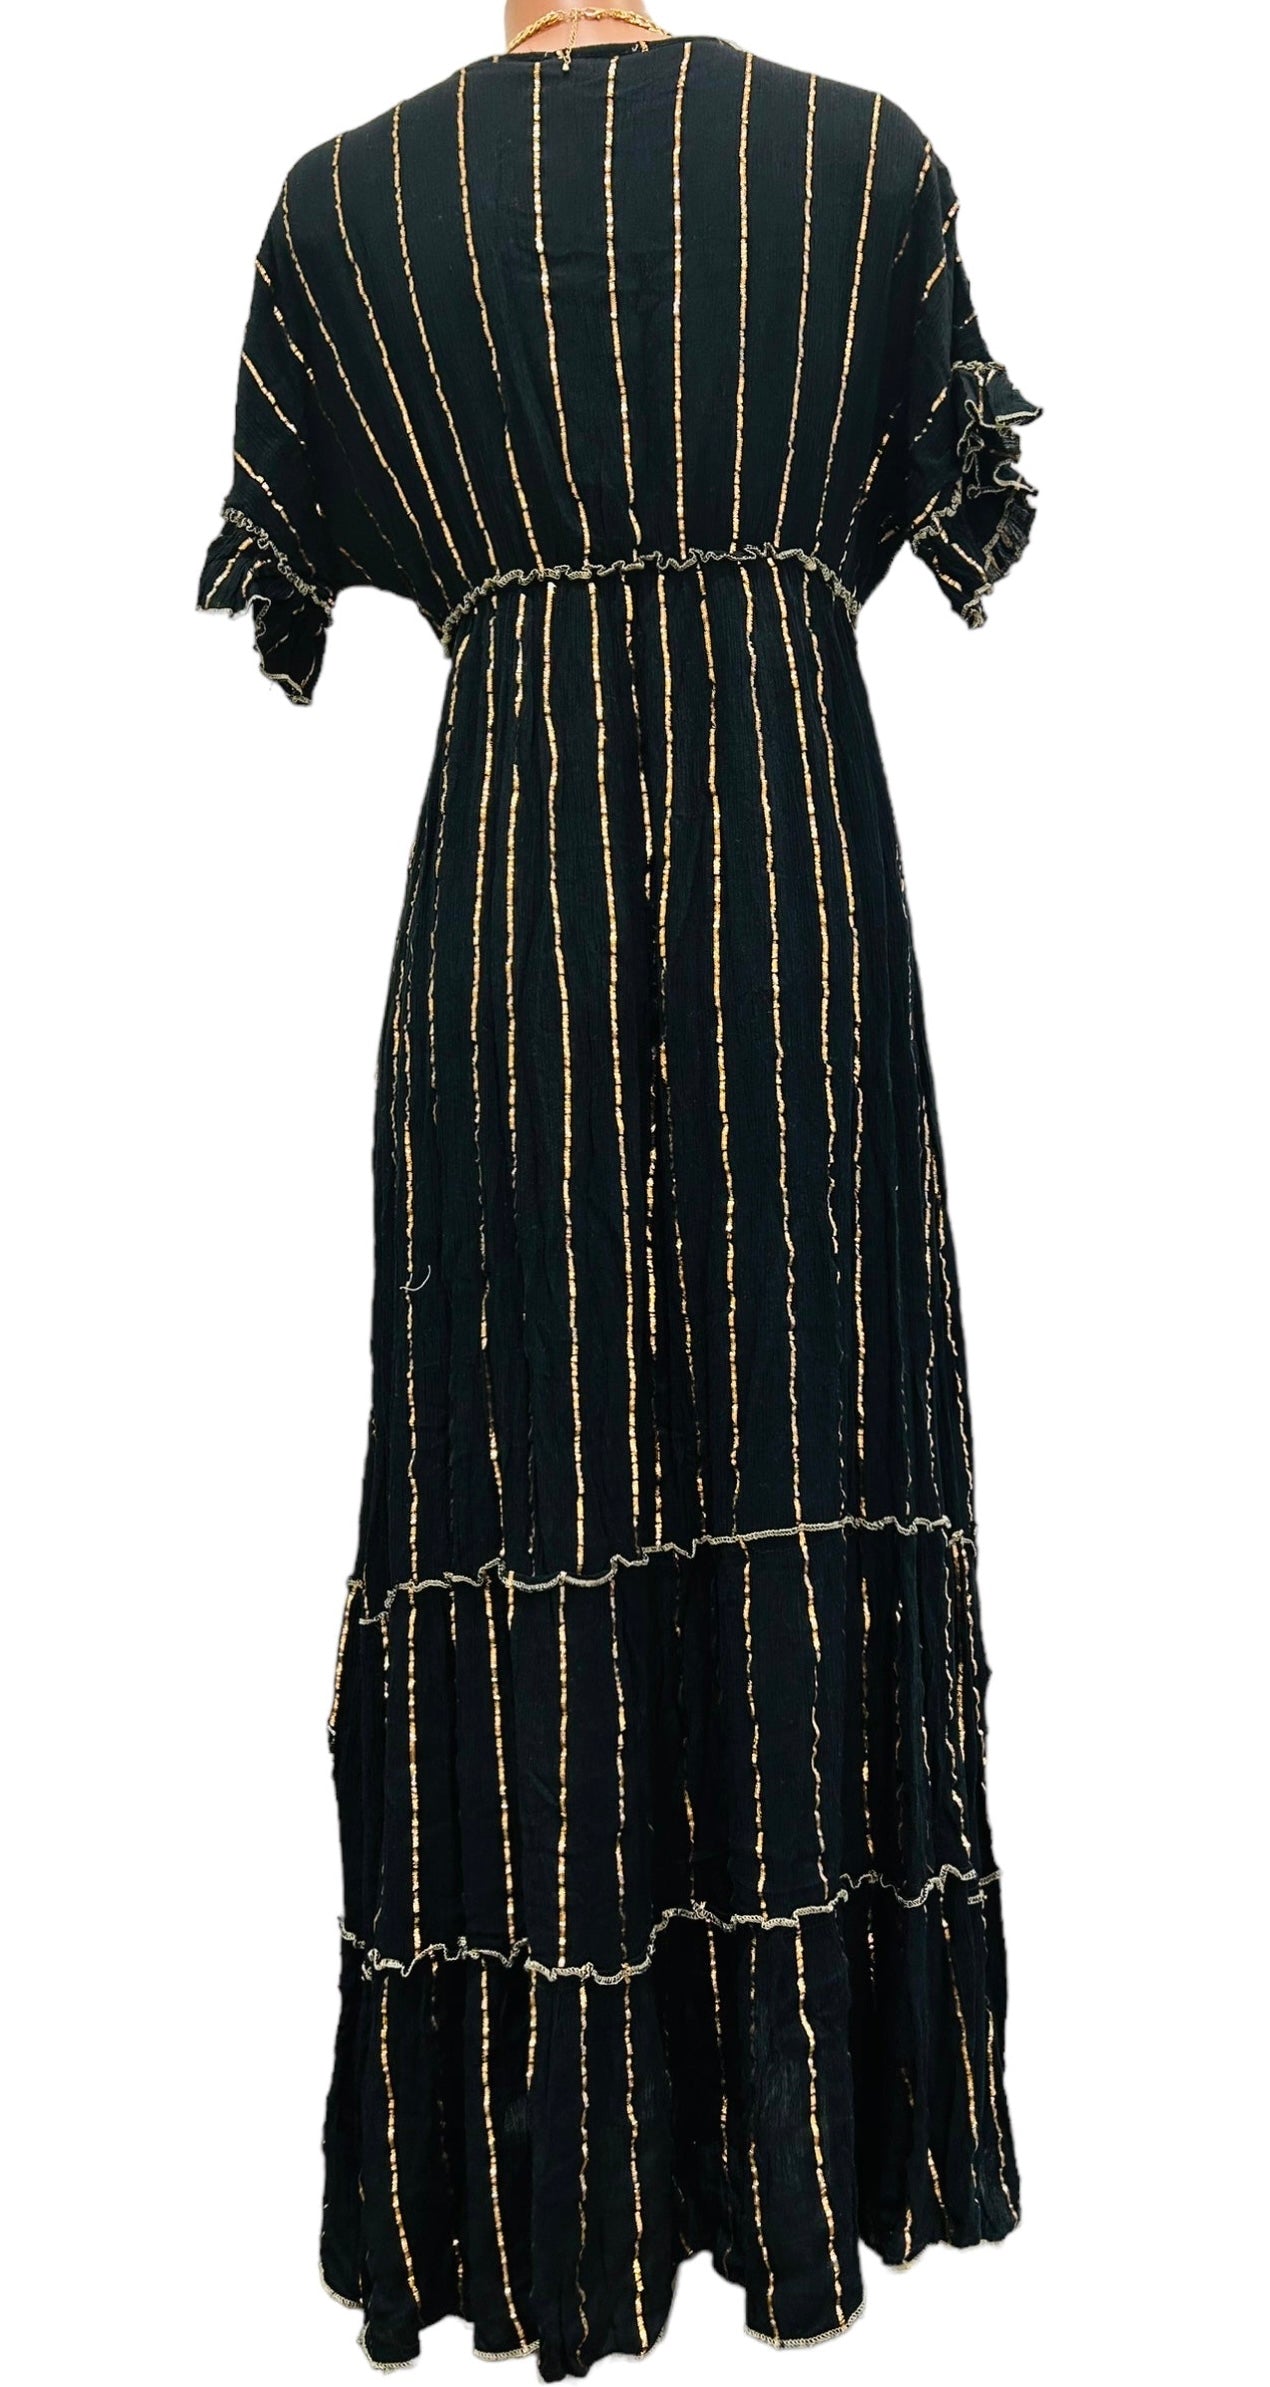 Sarah Black Long Dress.